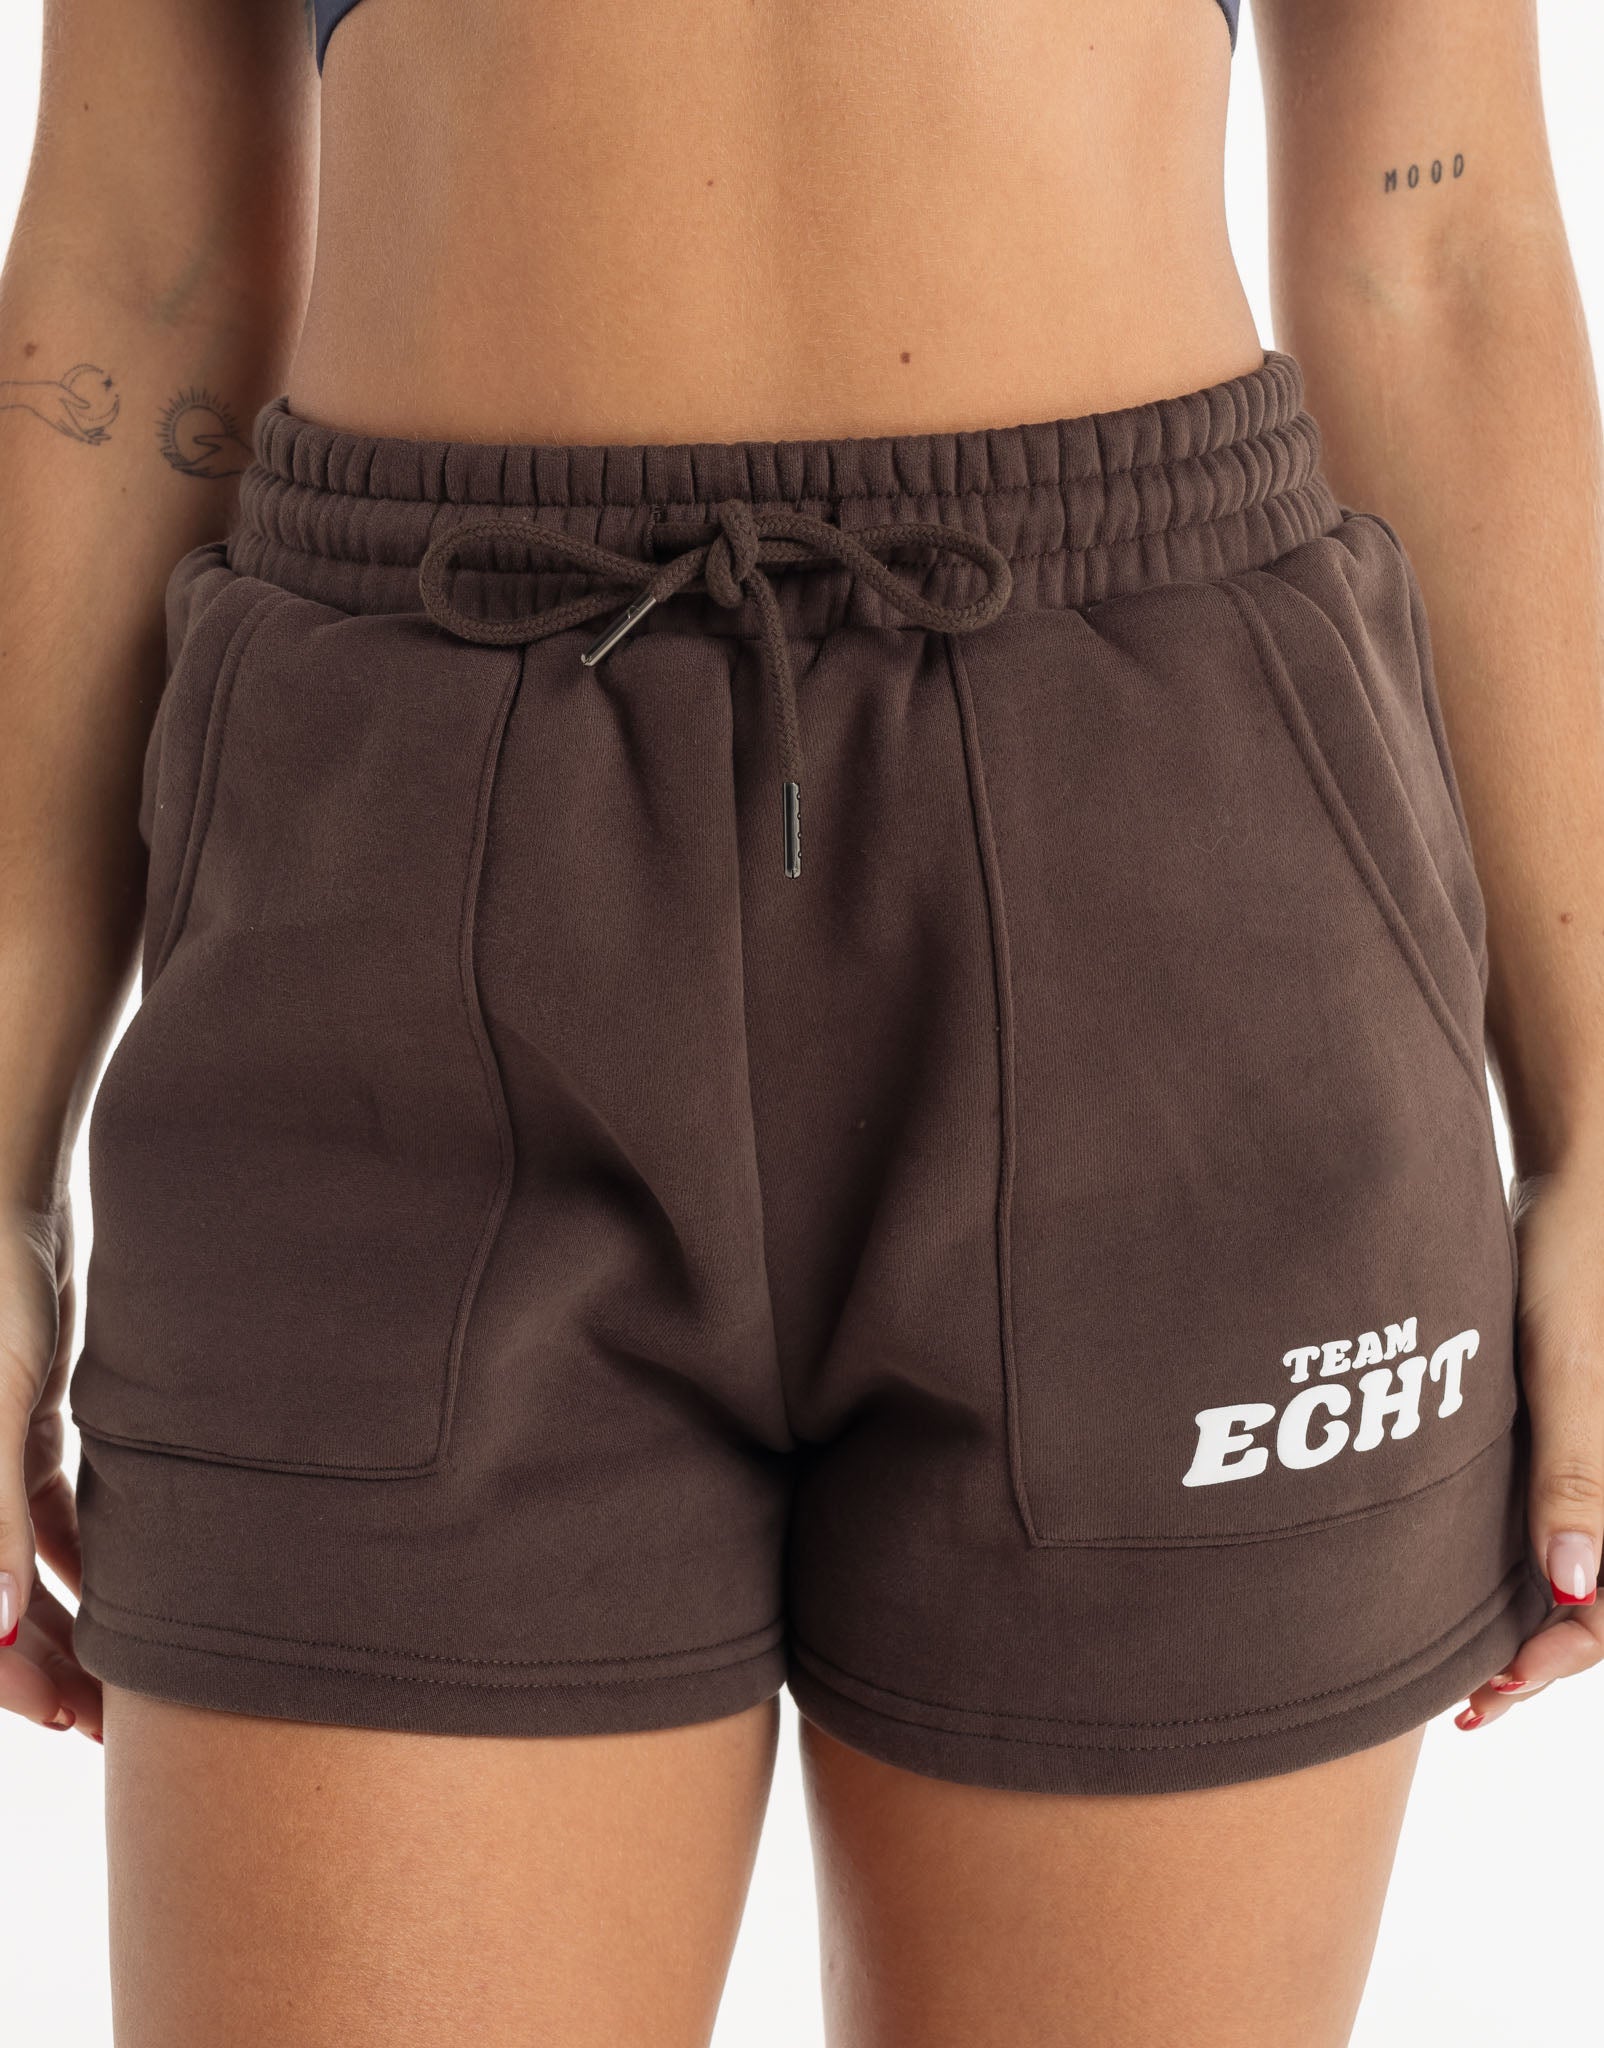 Team Echt Shorts - Fudge Brown